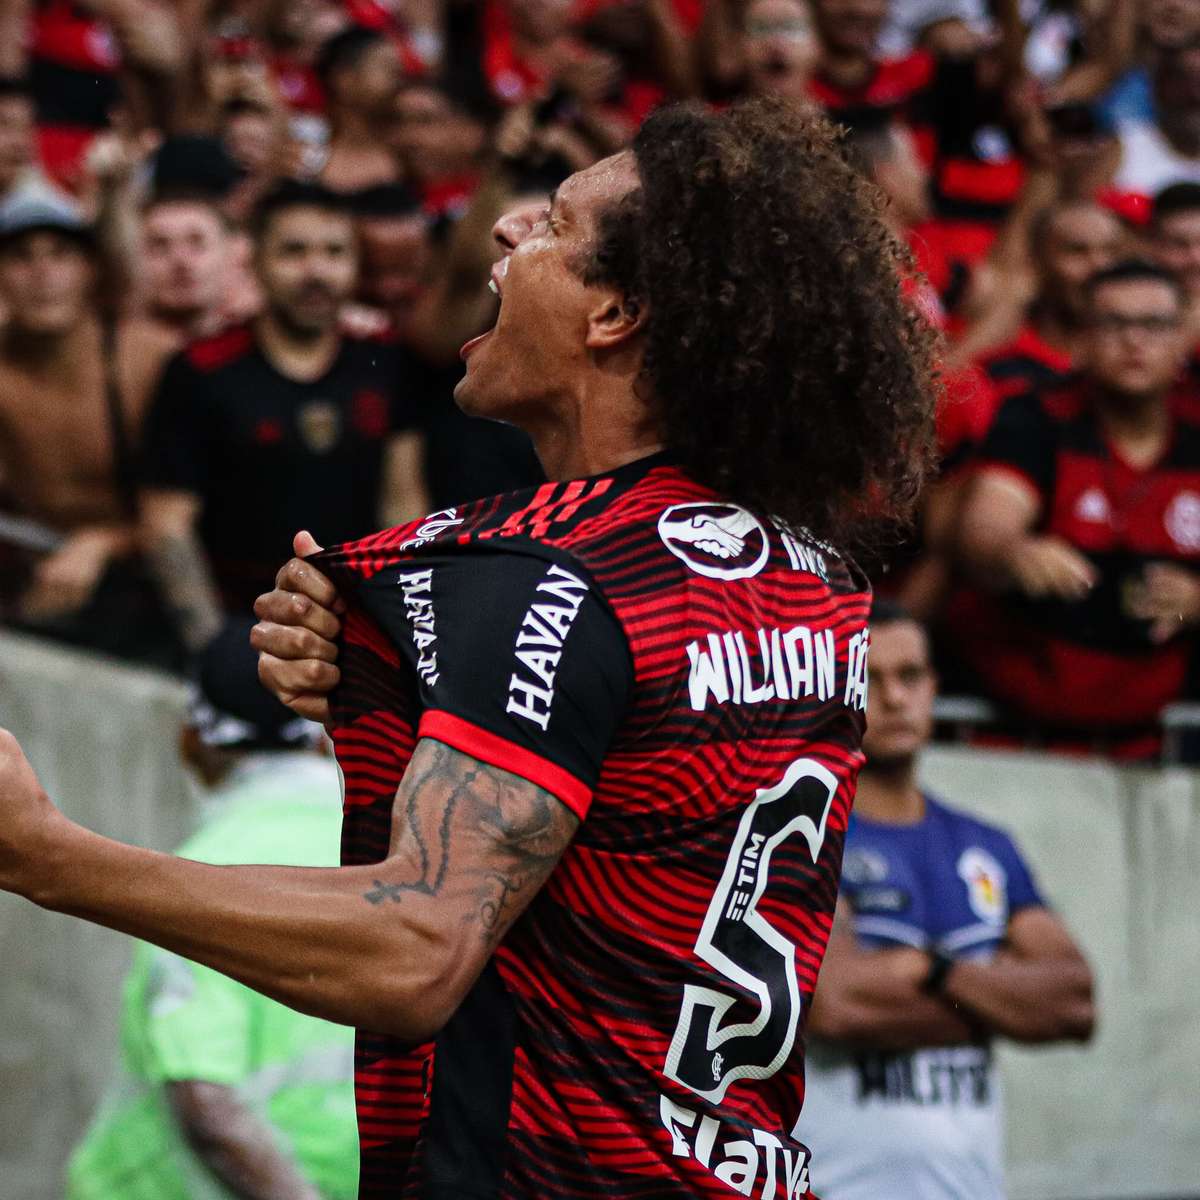 Agora pelo Flamengo, Marinho projeta jogo com o Palmeiras, rival